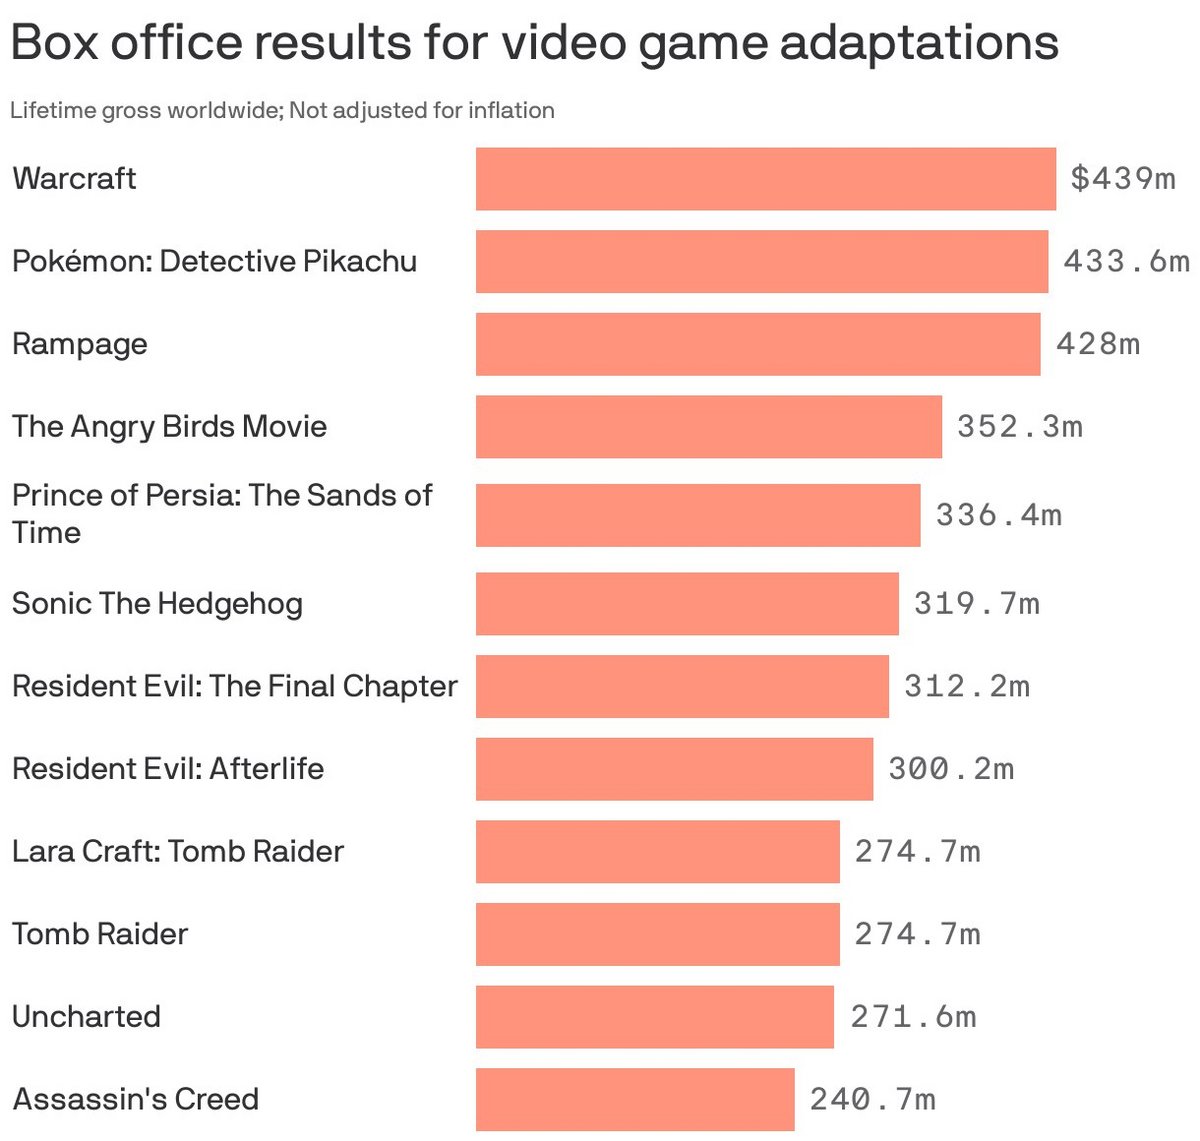 Résultats au box-office des adaptations de jeux vidéo au cinéma. Données de Box Office Mojo mises en graphique par Axios.